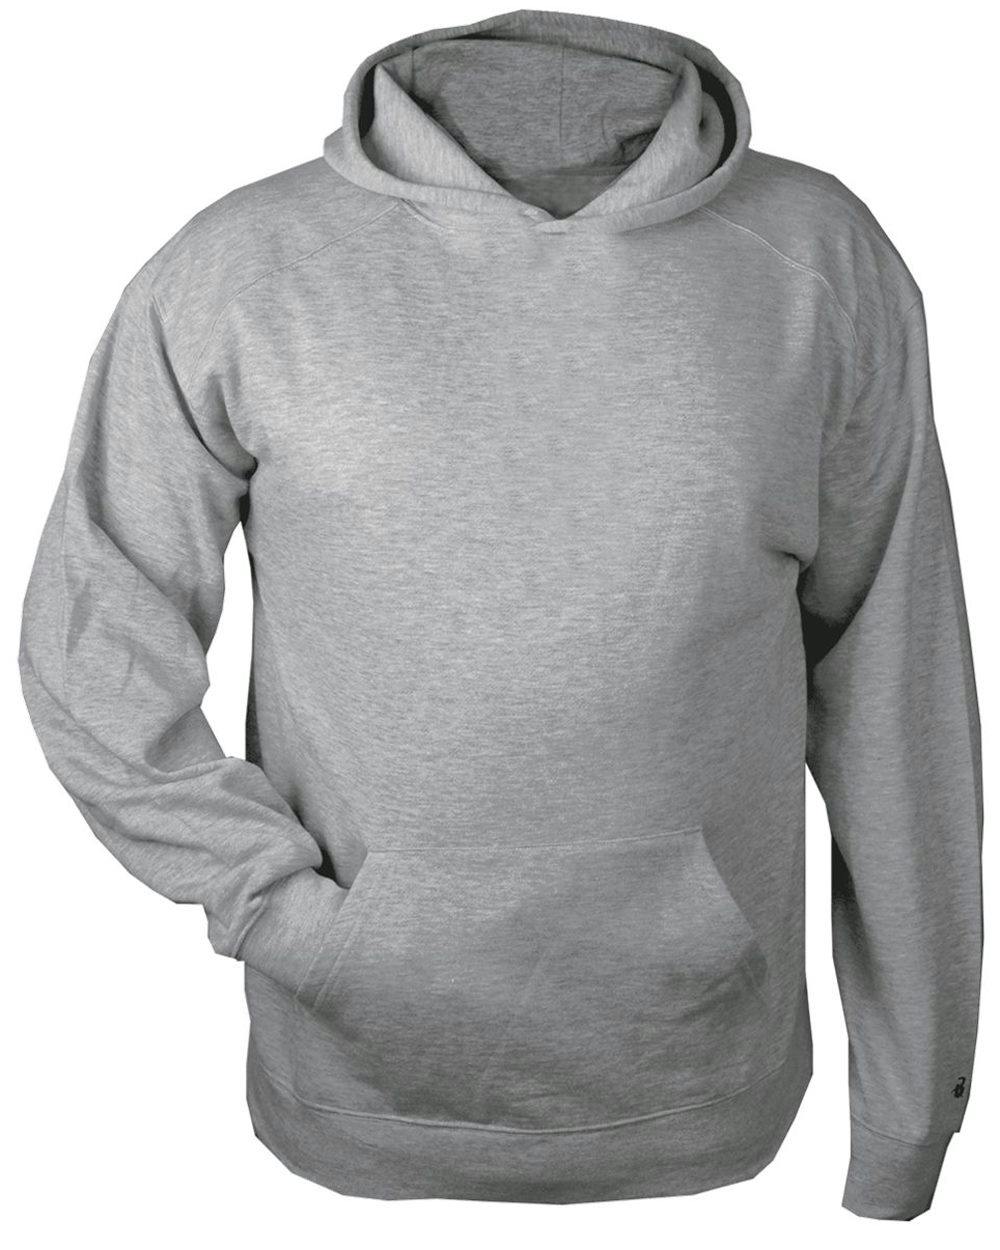 Image for Youth Fleece Hooded Sweatshirt - 5520